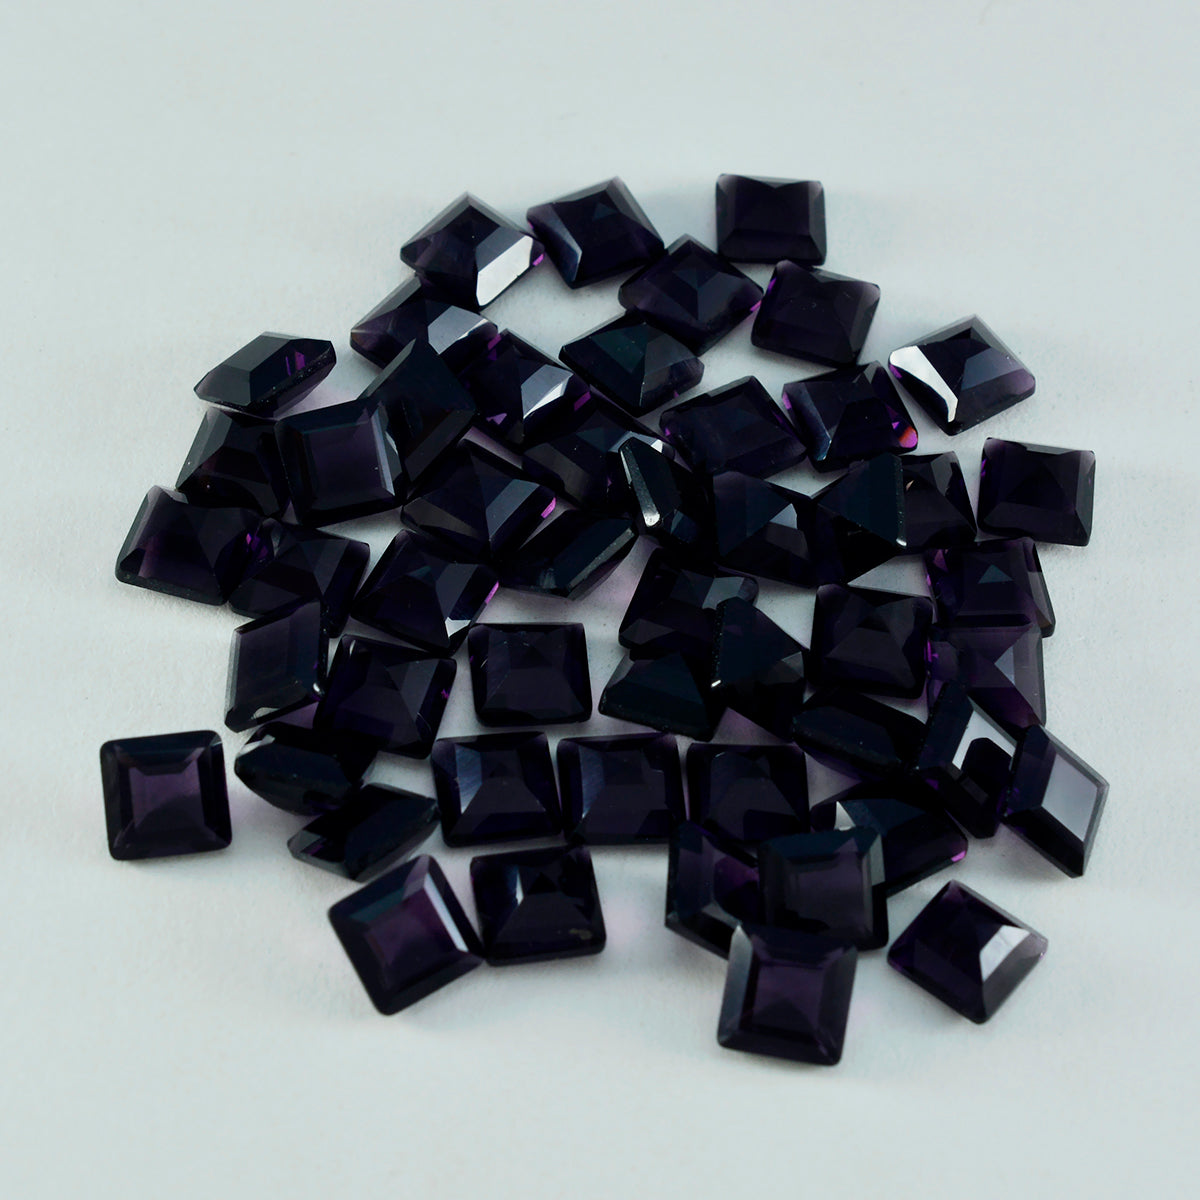 Riyogems 1 pieza de amatista púrpura CZ facetada 8x8 mm forma cuadrada piedra preciosa de calidad impresionante